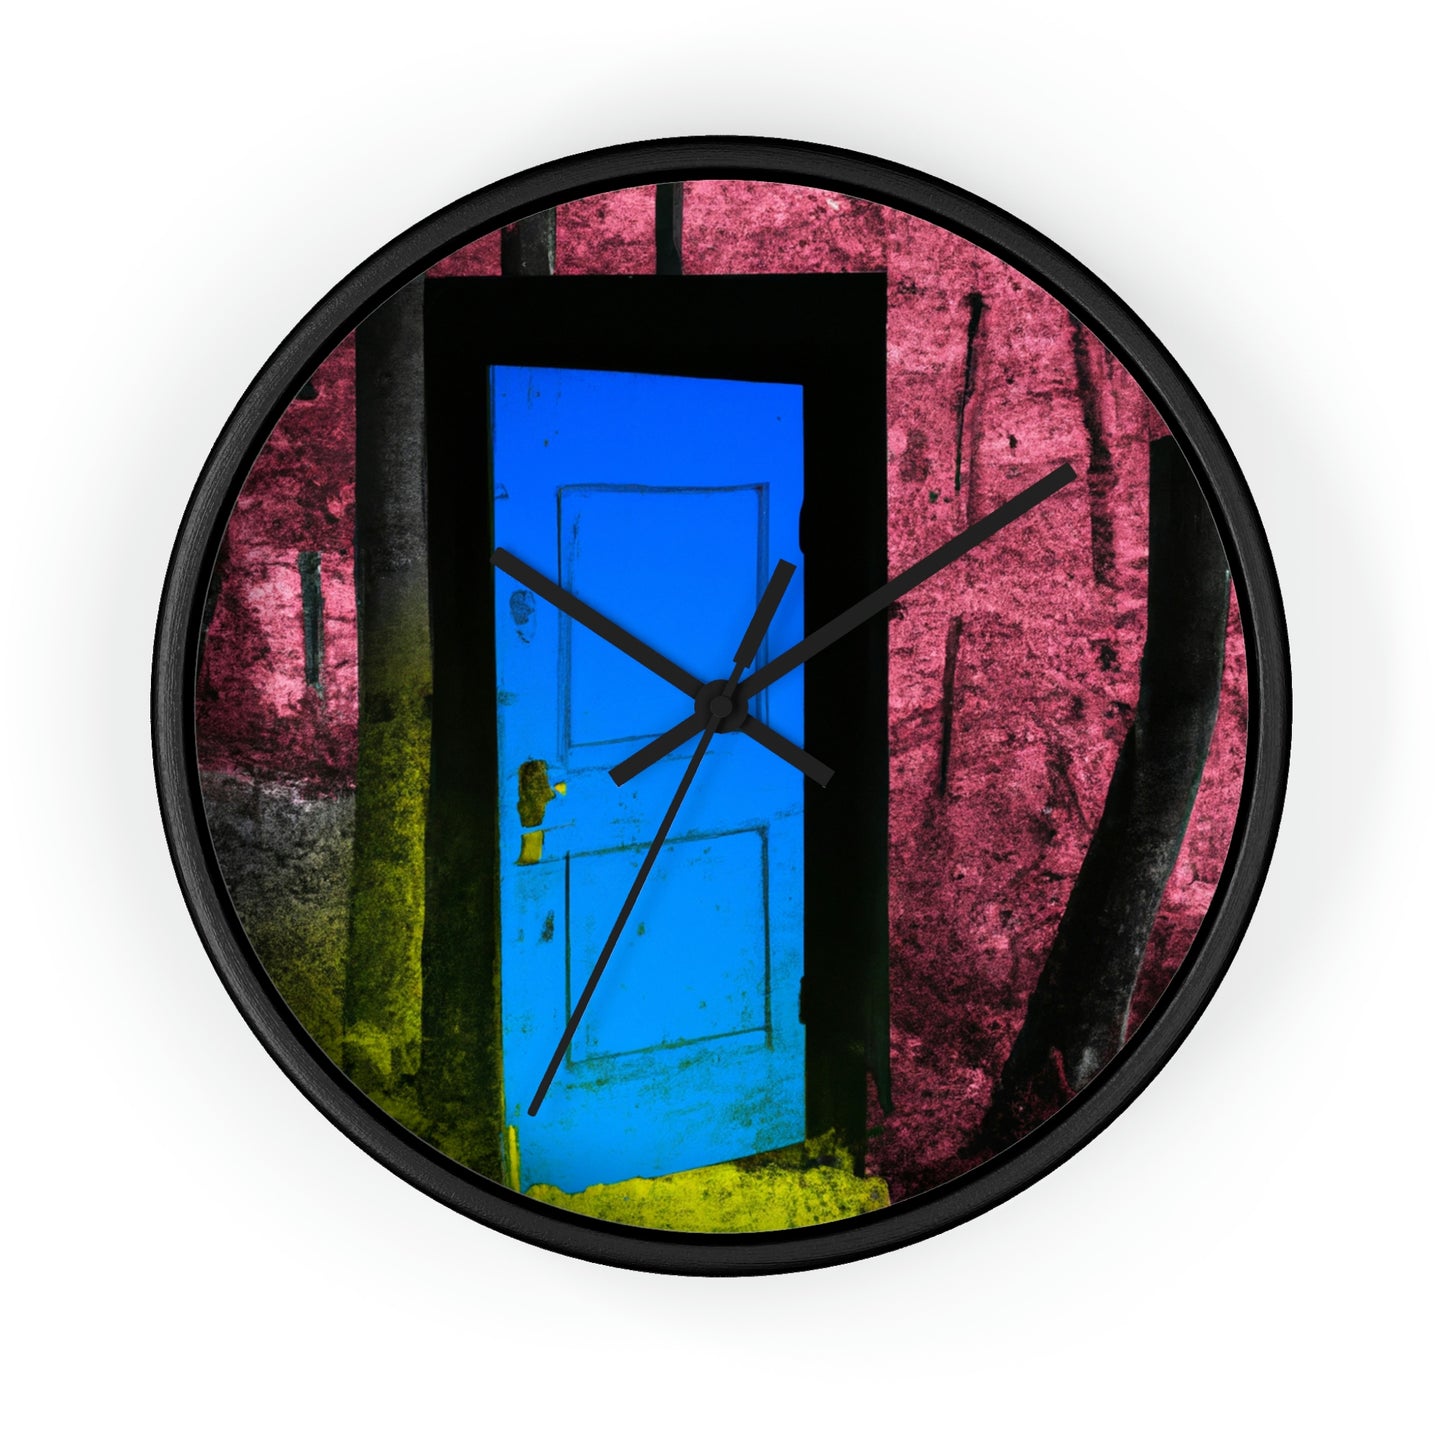 La puerta enigmática del bosque - El reloj de pared alienígena